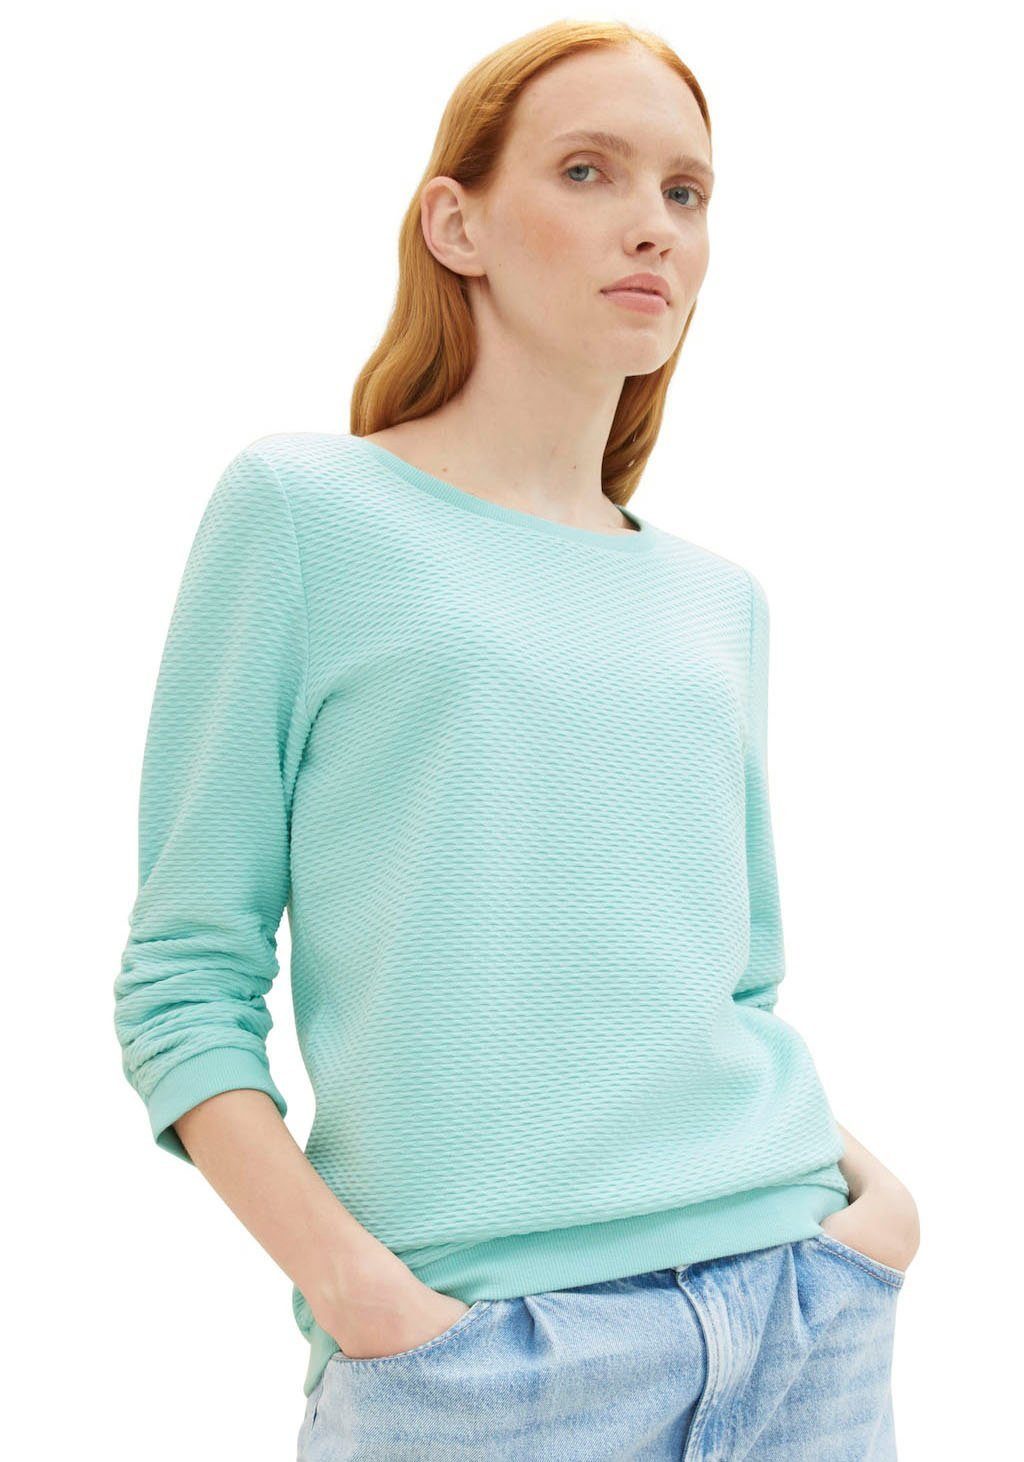 Materialoberfläche Denim turquoise pastel Sweatshirt besonderer TAILOR TOM mit